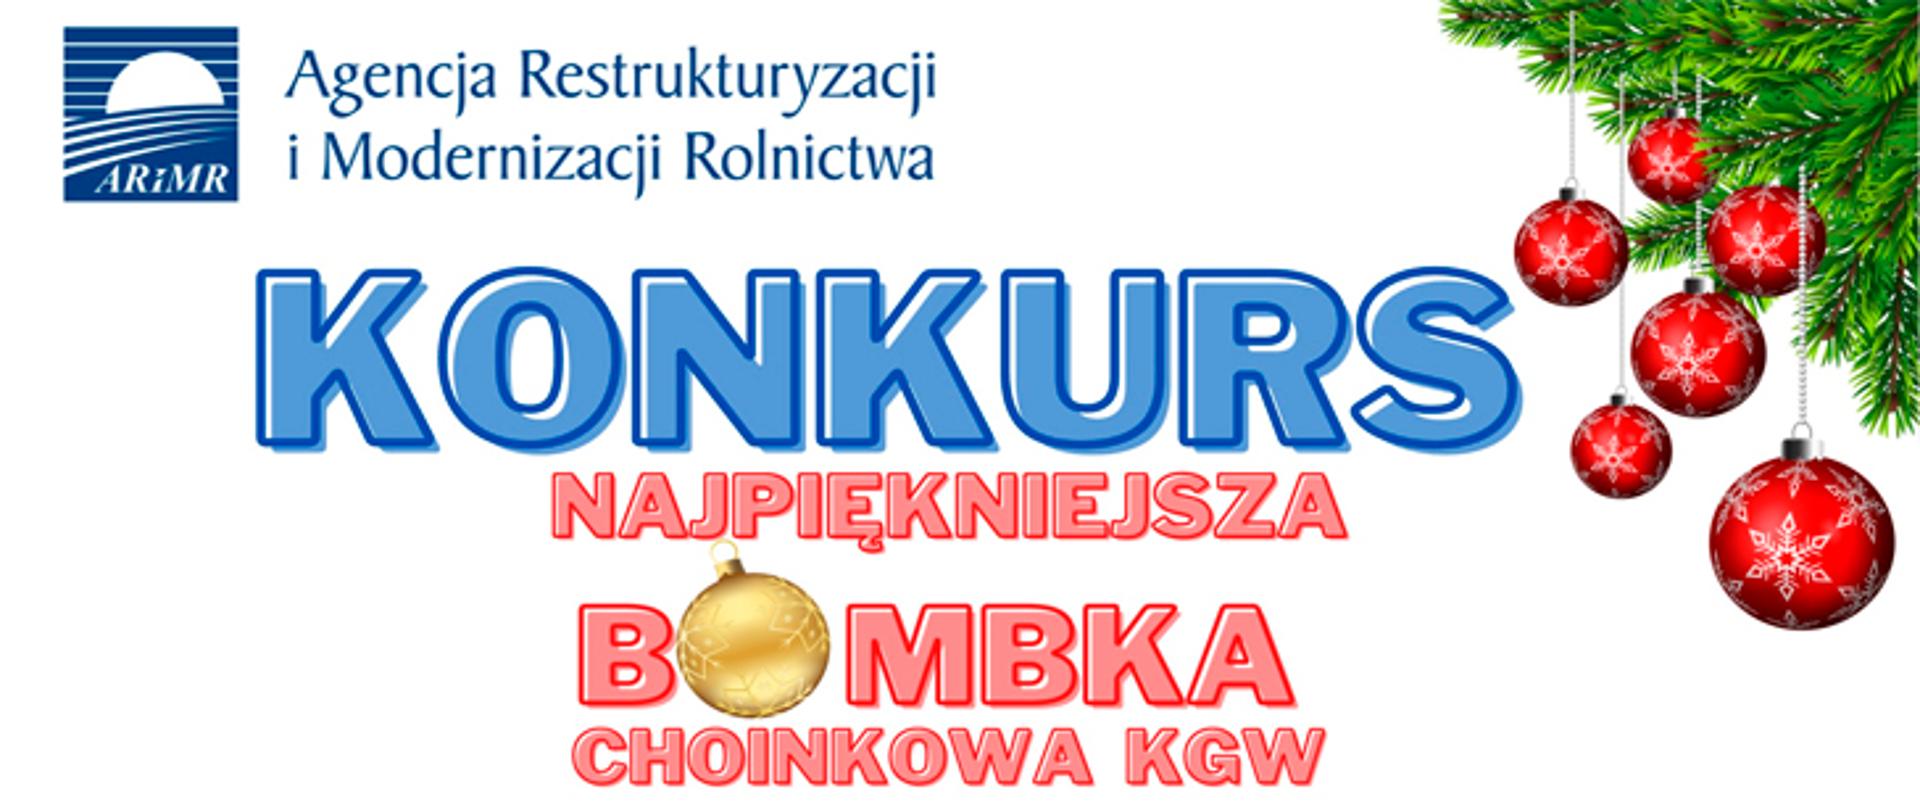 bombka_choinkowa_